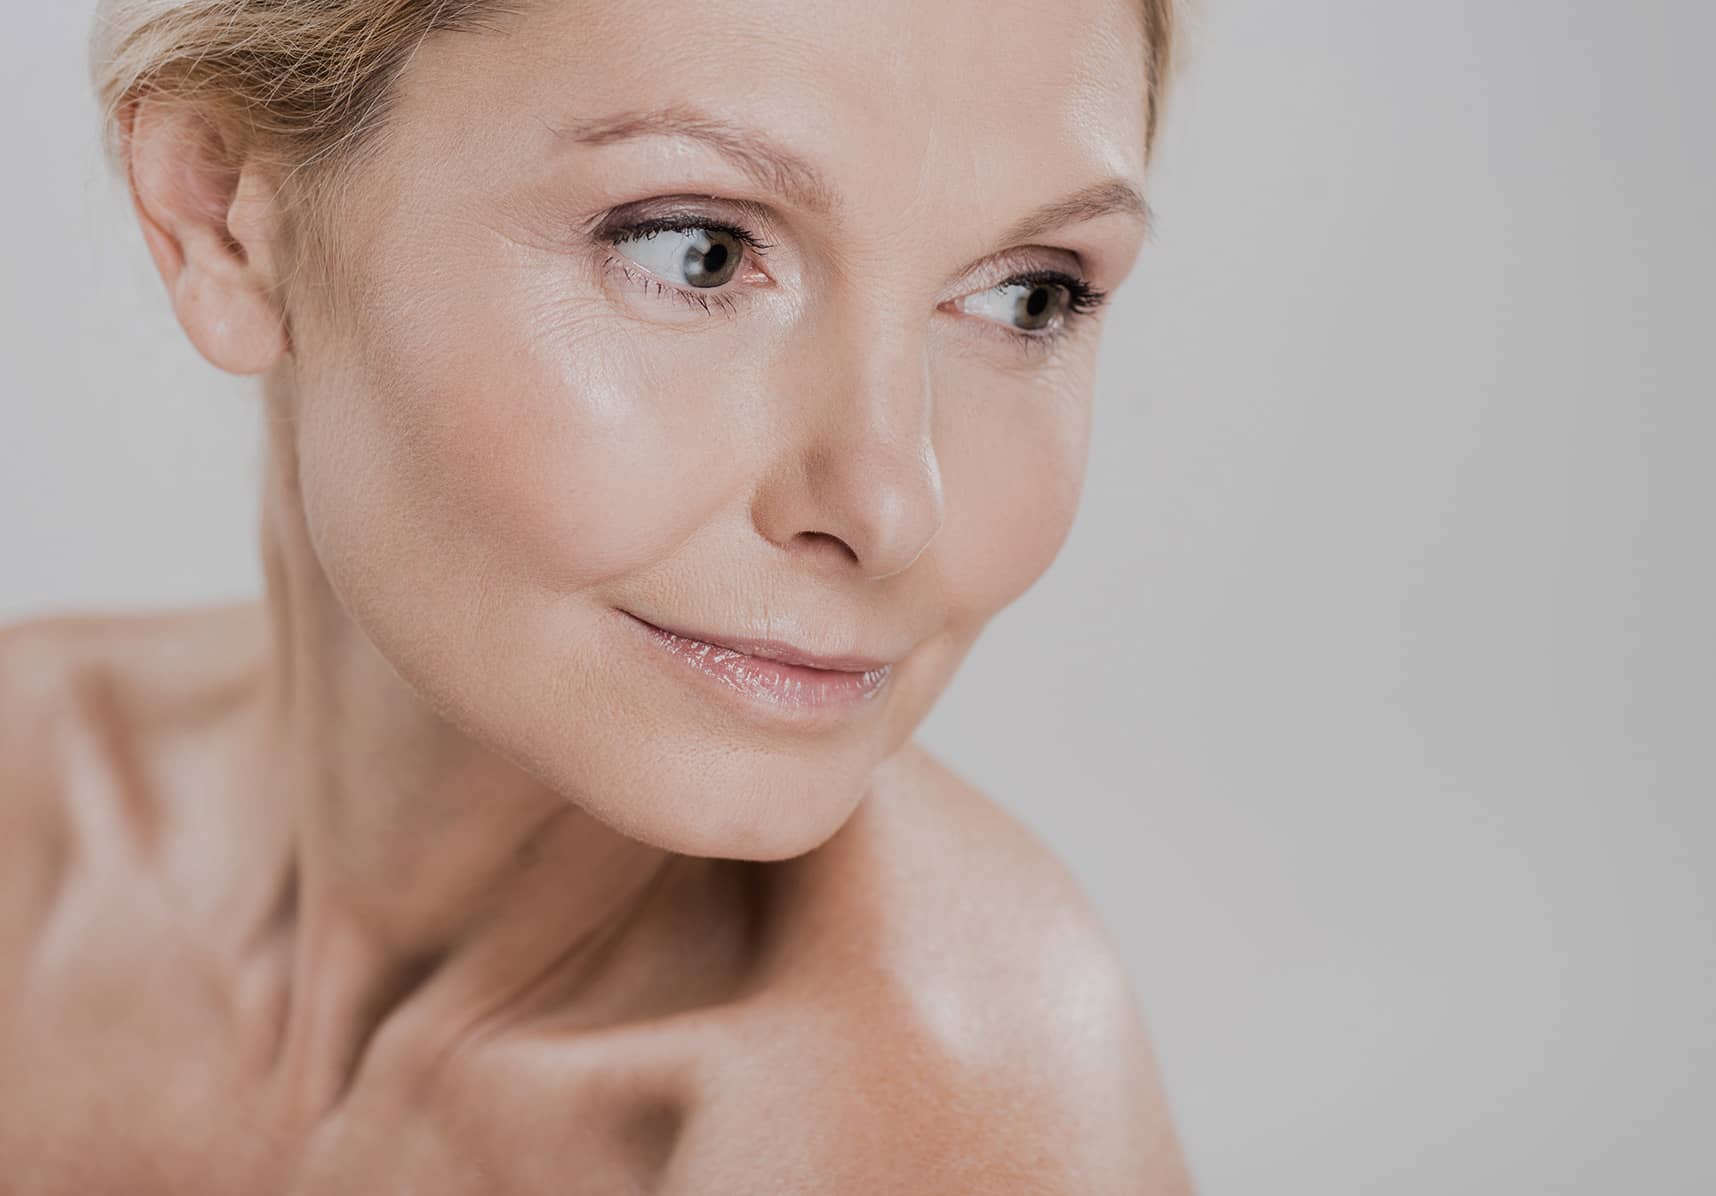 Menton : épilation laser définitive du visage | Paris 12 | Dr Kathleen Scemama